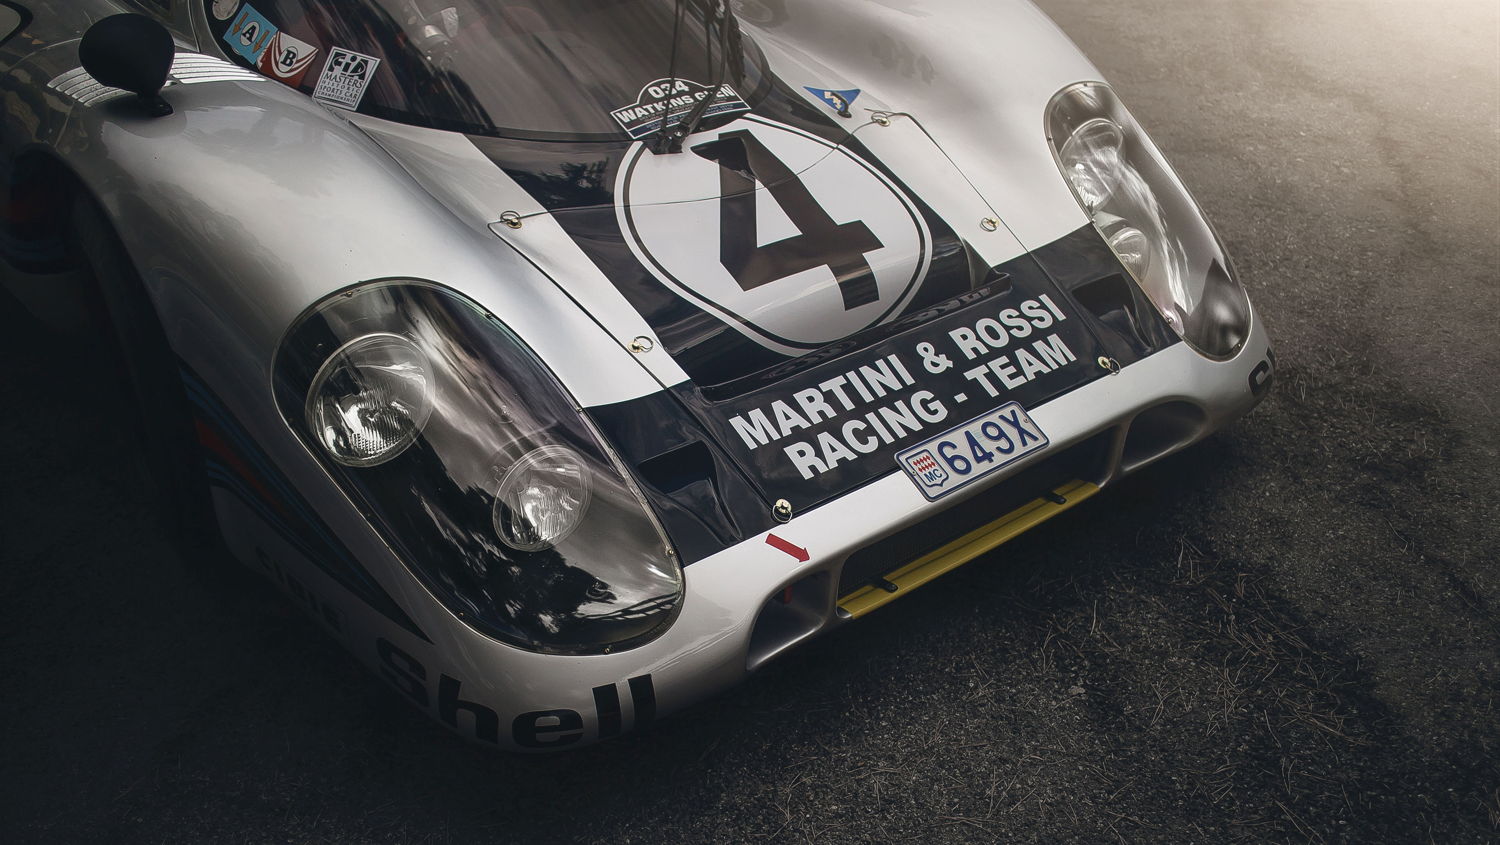 Legendario auto de carreras Porsche utilizado para uso diario - Recorriendo las calles de Mónaco en un Porsche 917